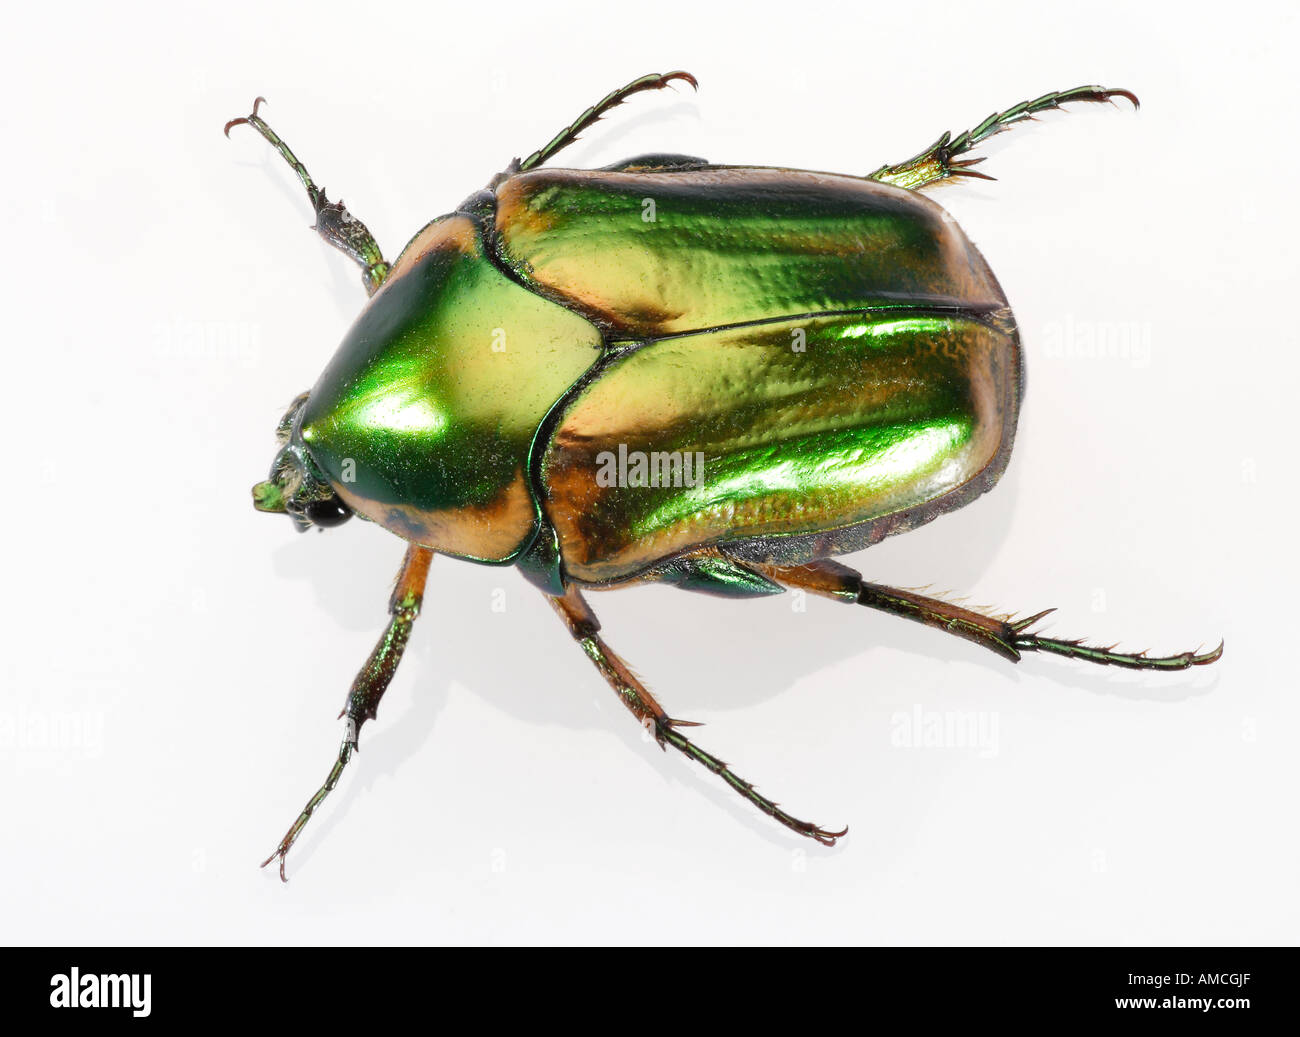 Hanneton vert 3 pouces de long w Carapace irisée Peach aussi Beetle Banque D'Images